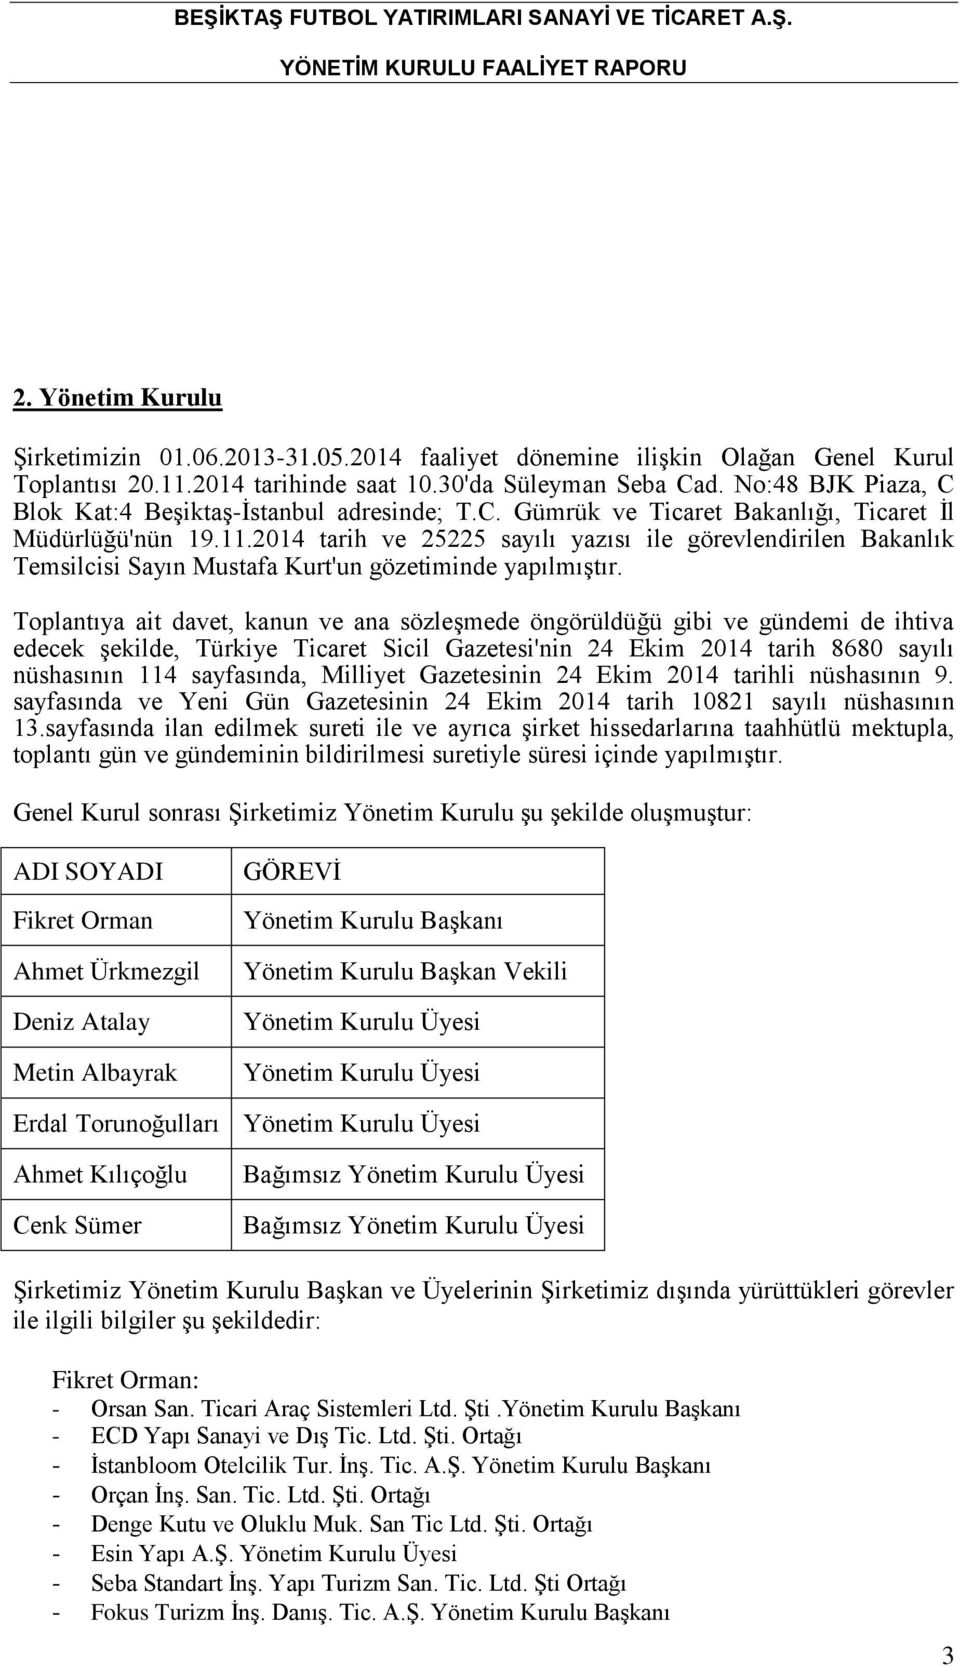 2014 tarih ve 25225 sayılı yazısı ile görevlendirilen Bakanlık Temsilcisi Sayın Mustafa Kurt'un gözetiminde yapılmıştır.